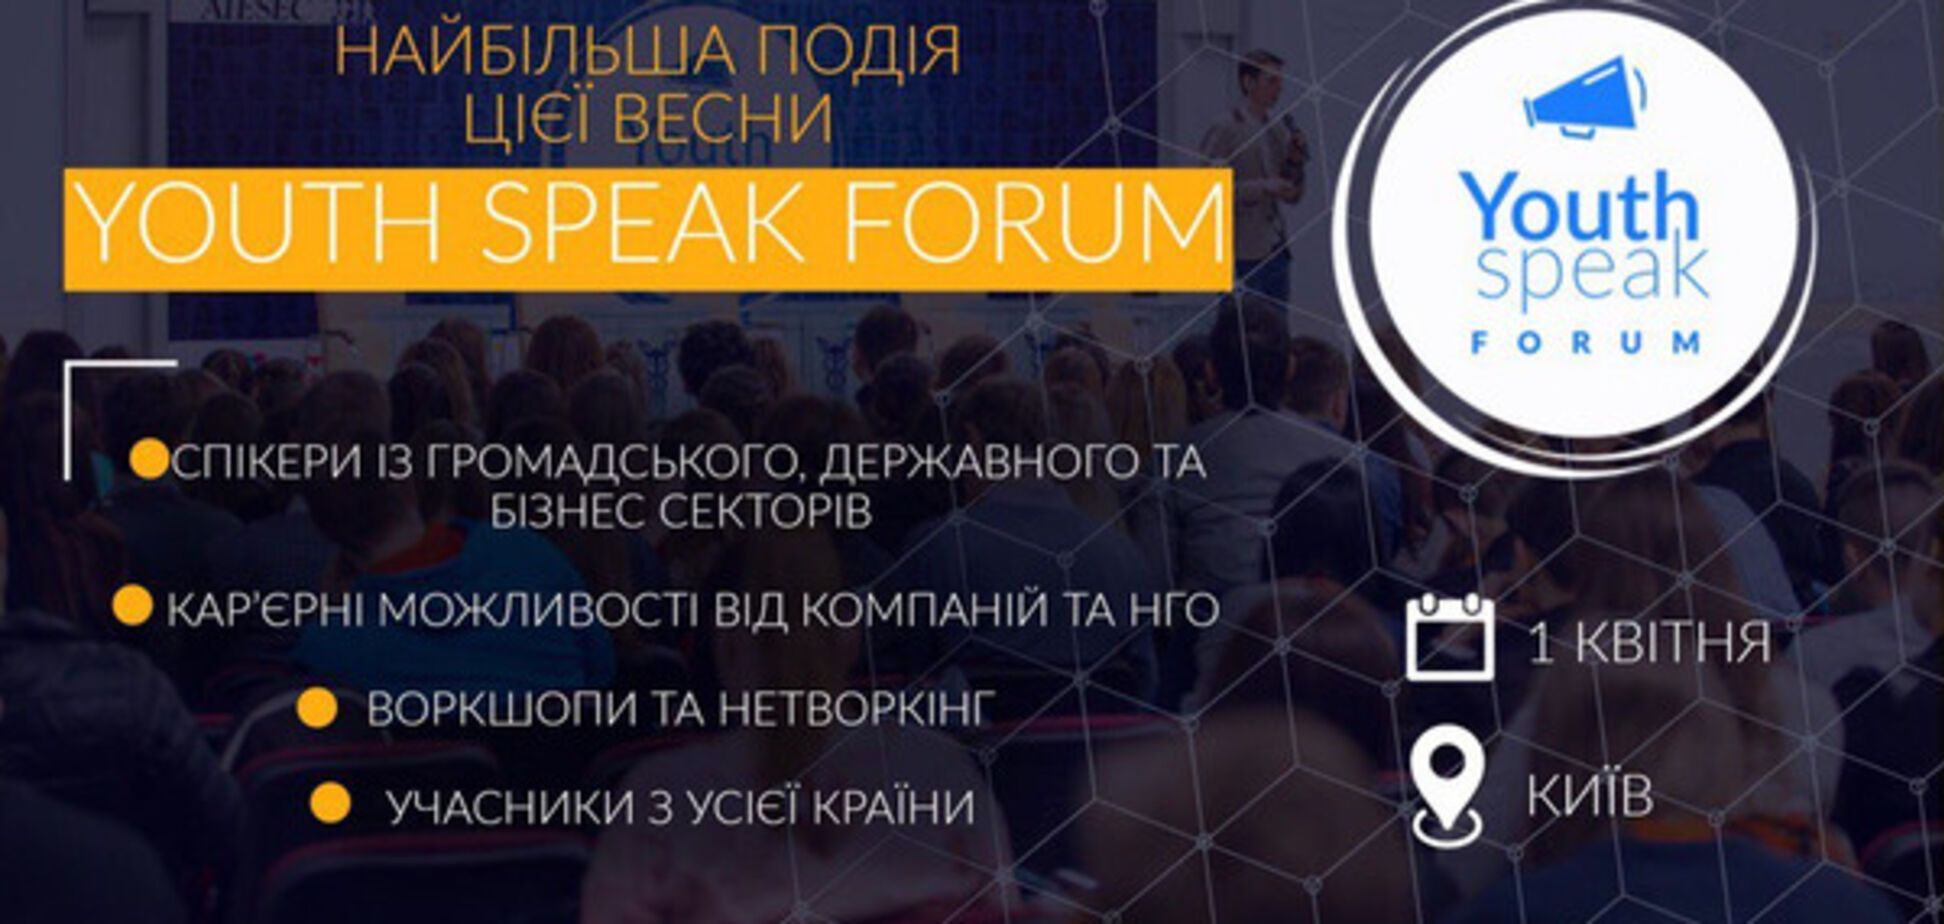 Найбільша молодіжна конференція цієї весни - YouthSpeak Forum відбудеться 1 квітня 2017 року